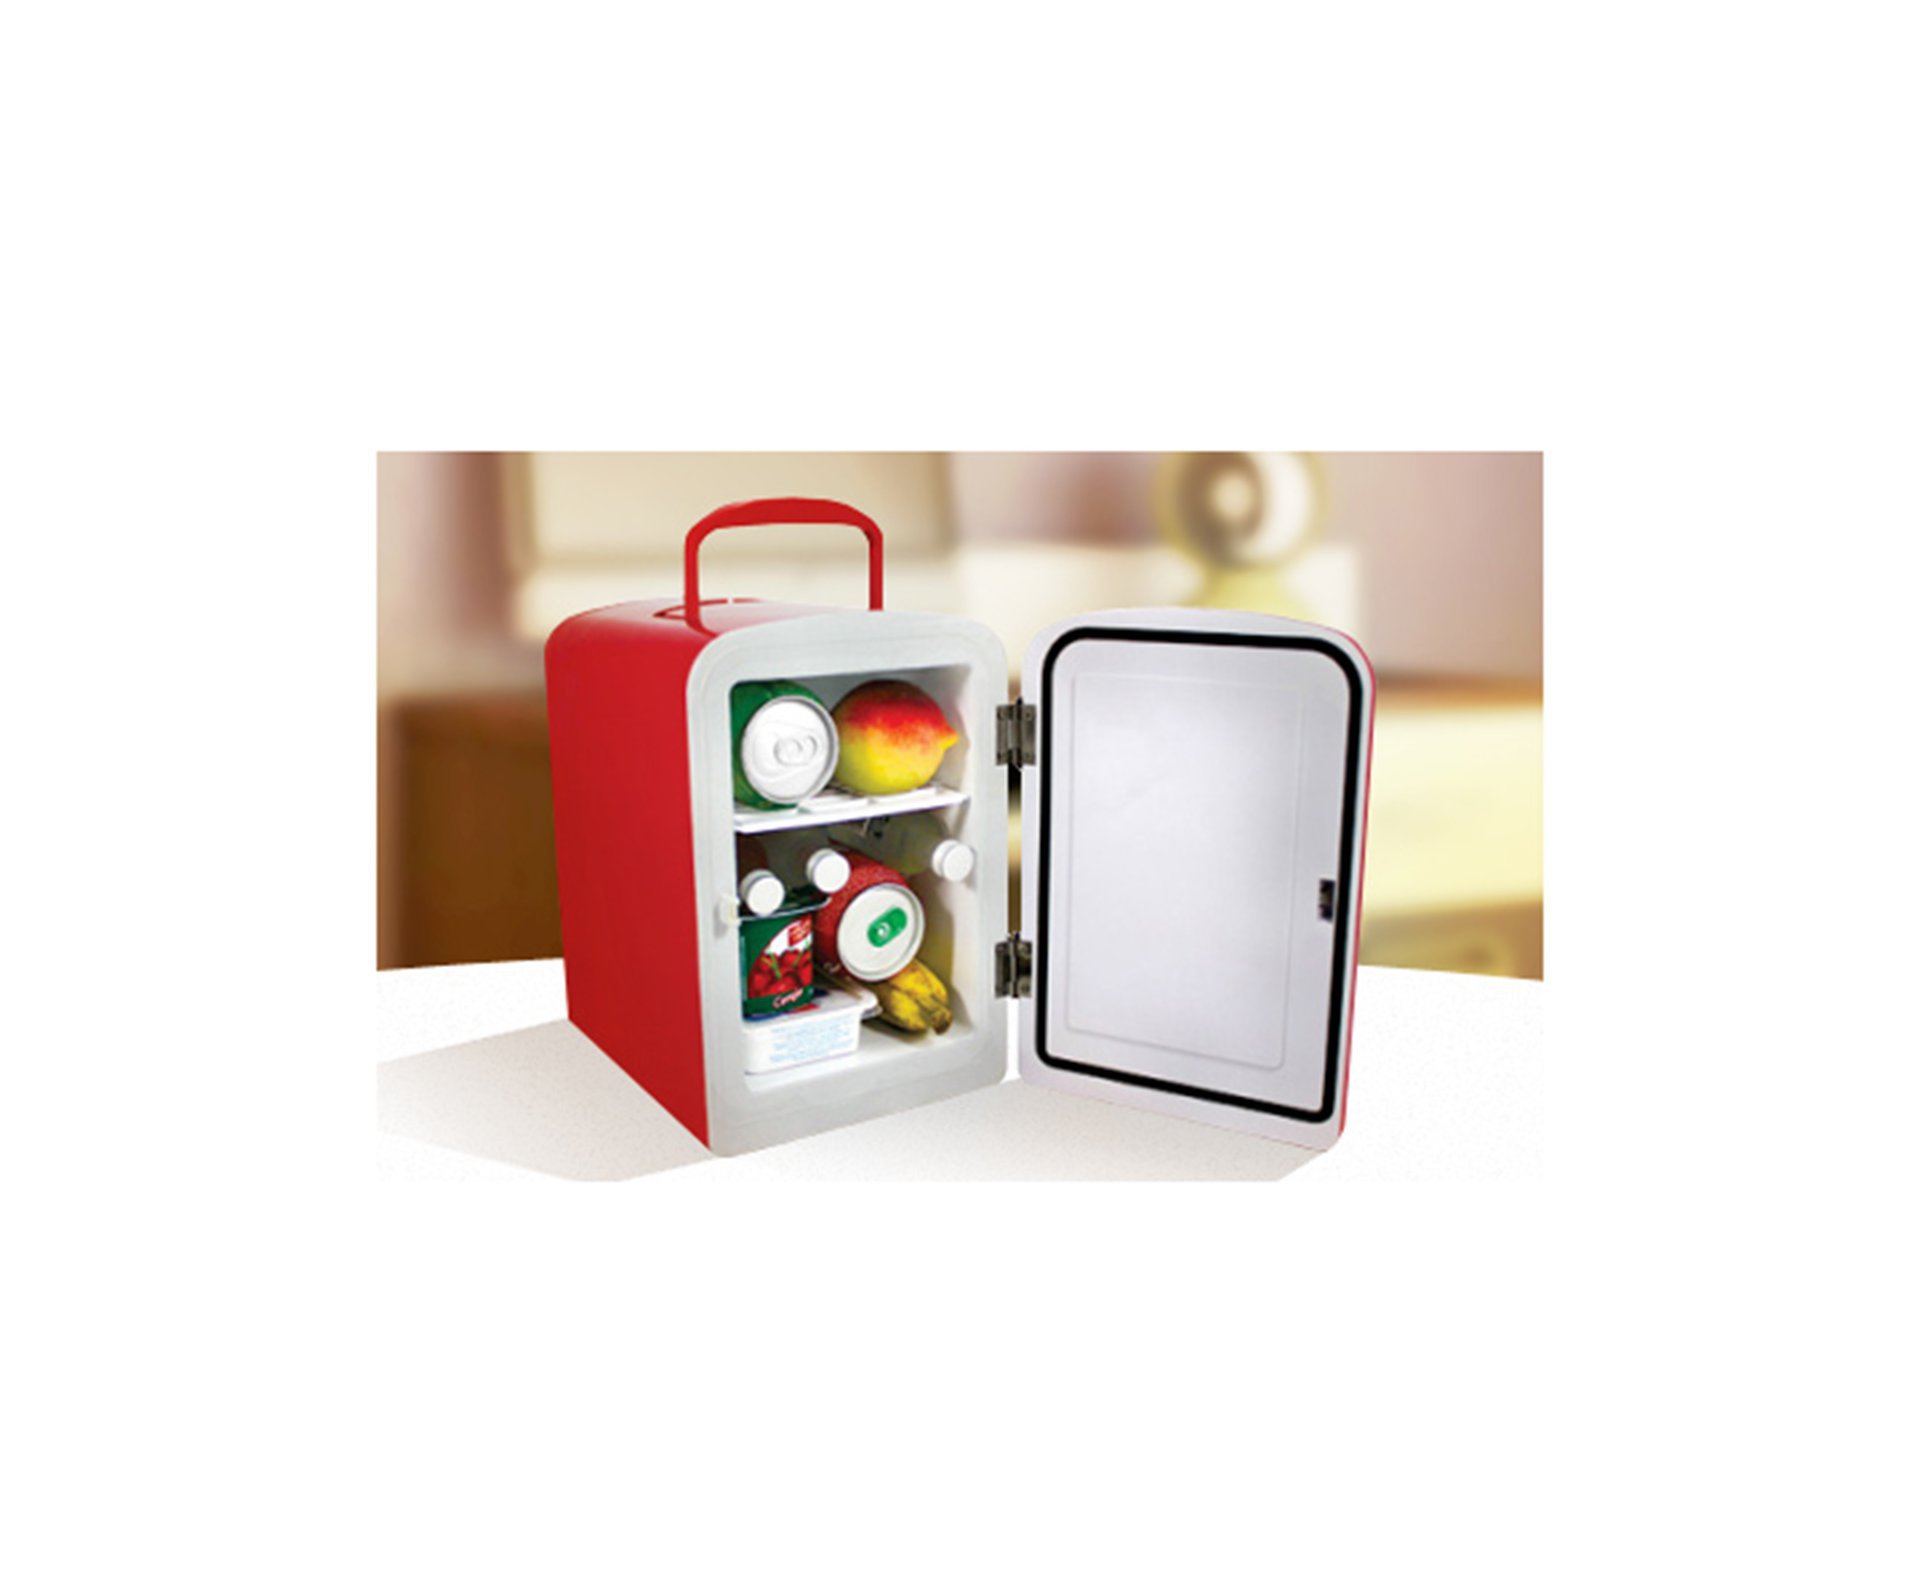 Mini Refrigerador E Aquecedor 5l Vermelha - Fixxar